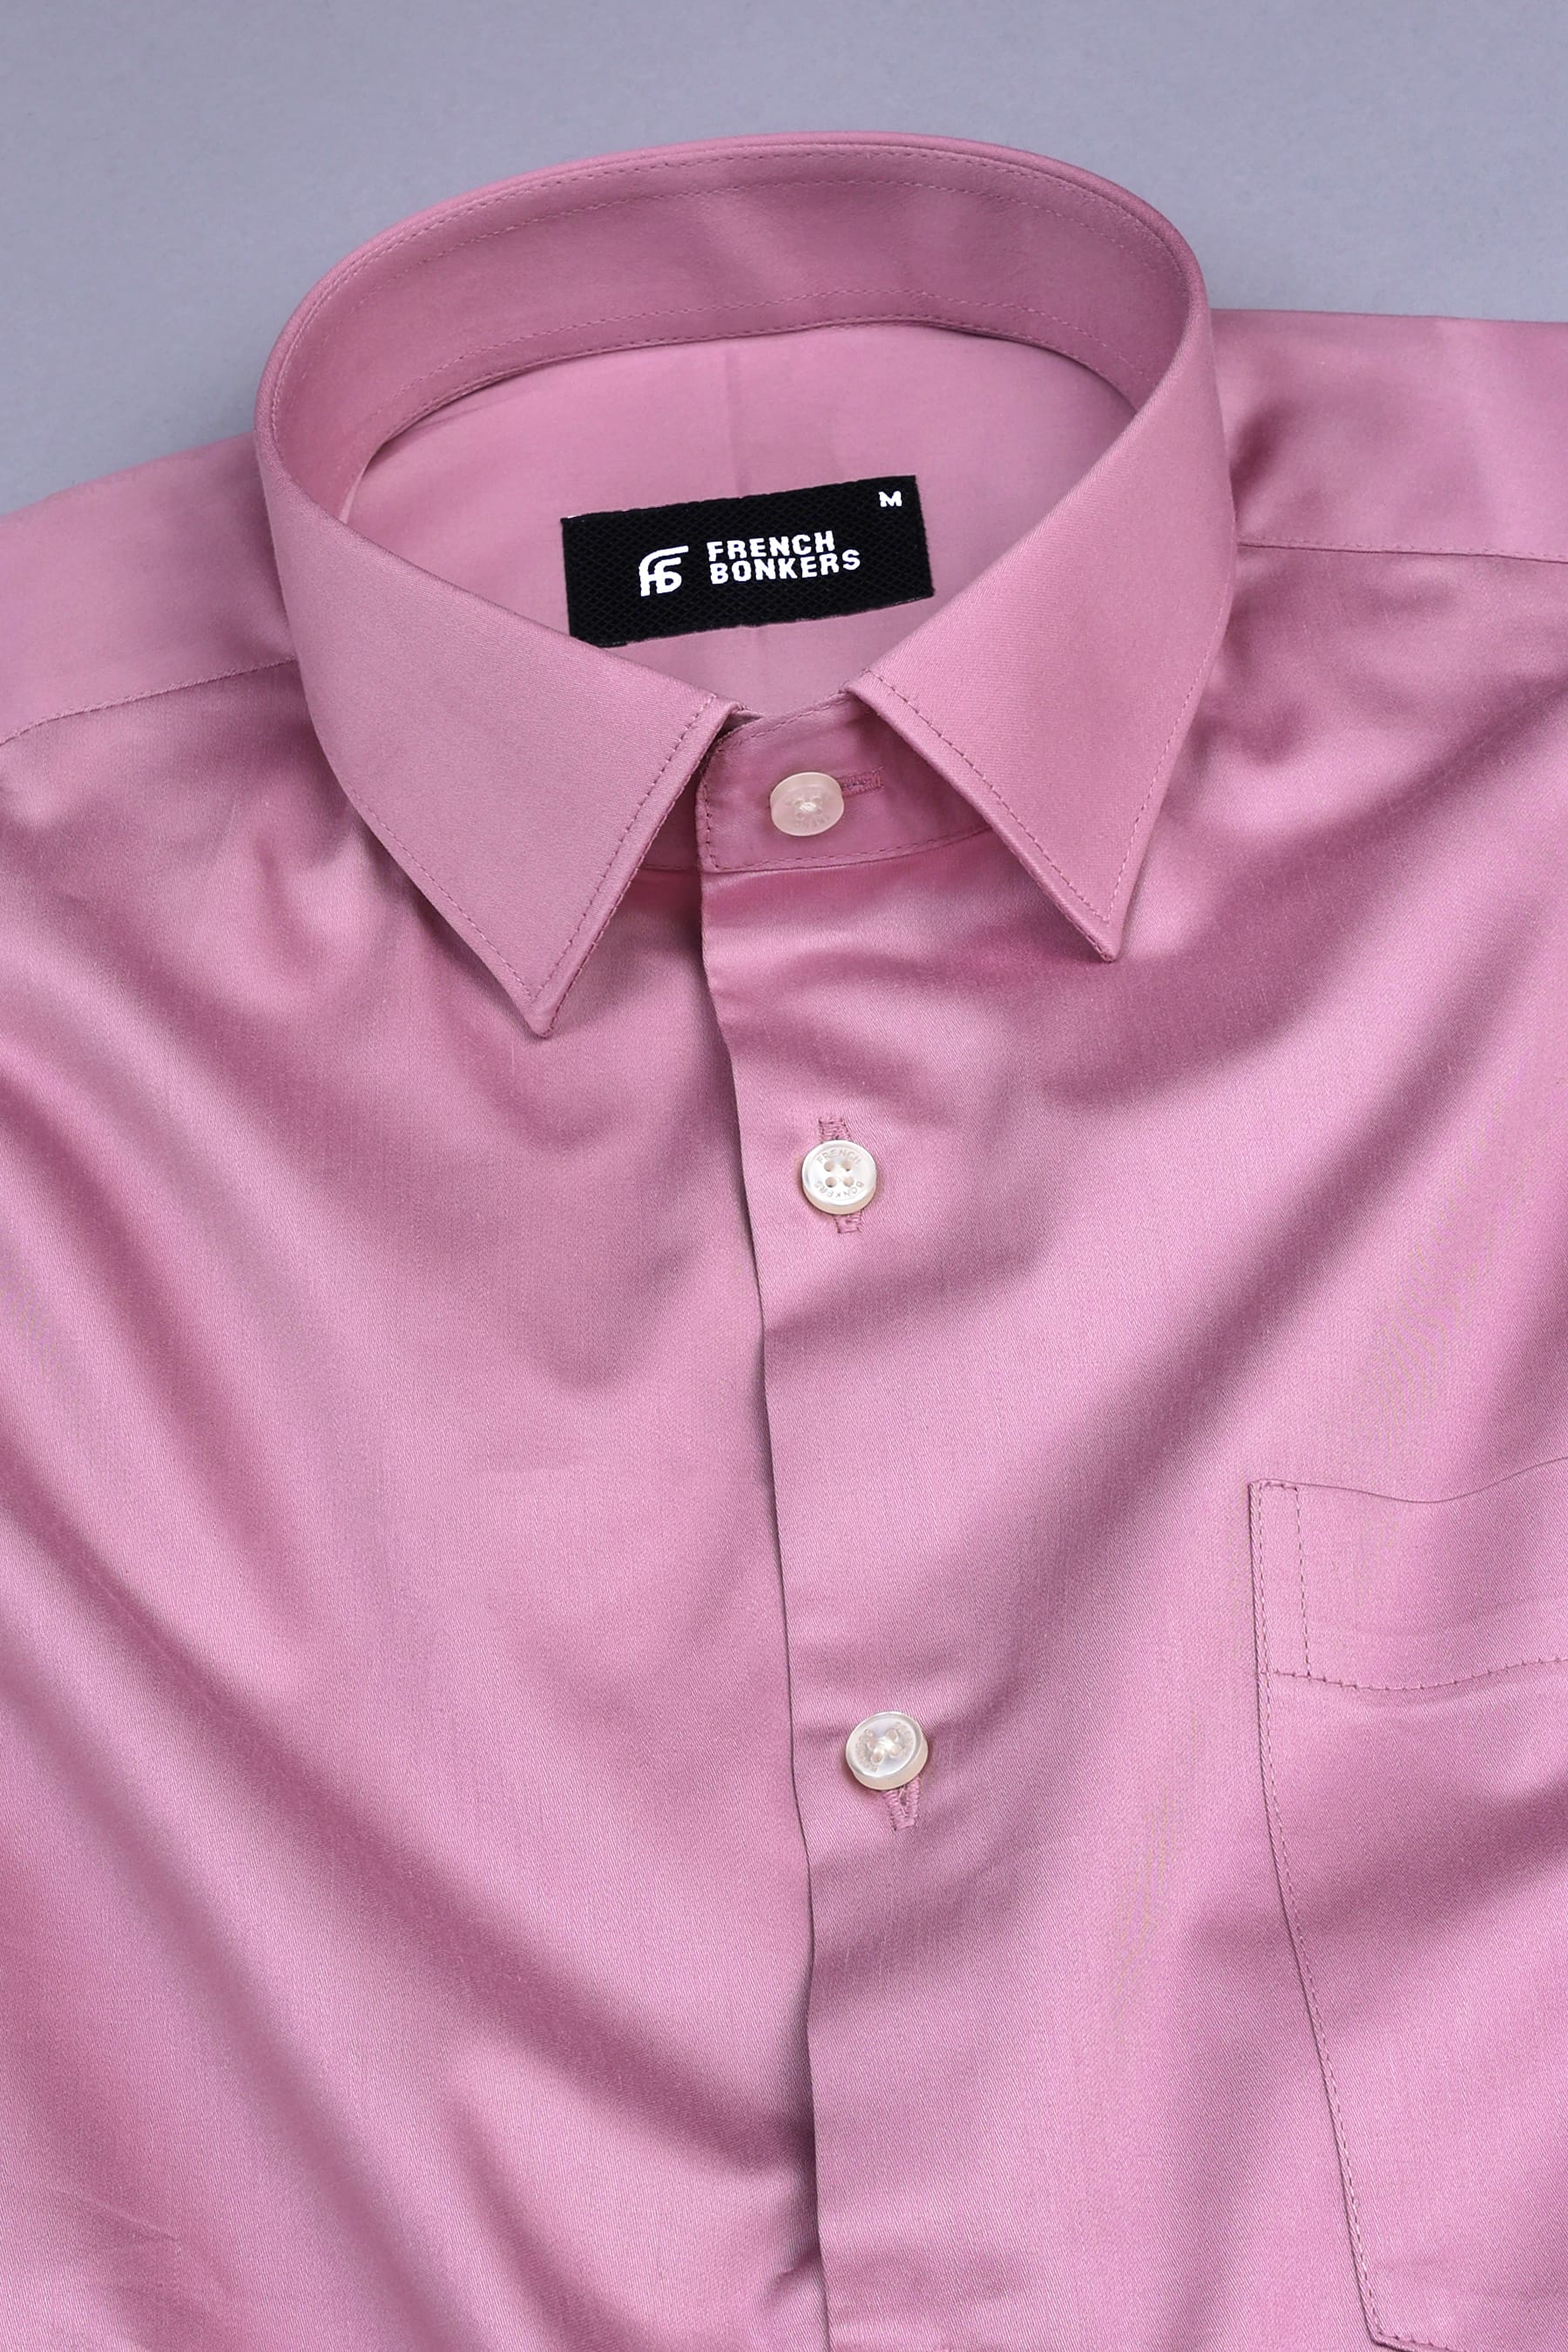 Tea rose pink cotton satin shirt